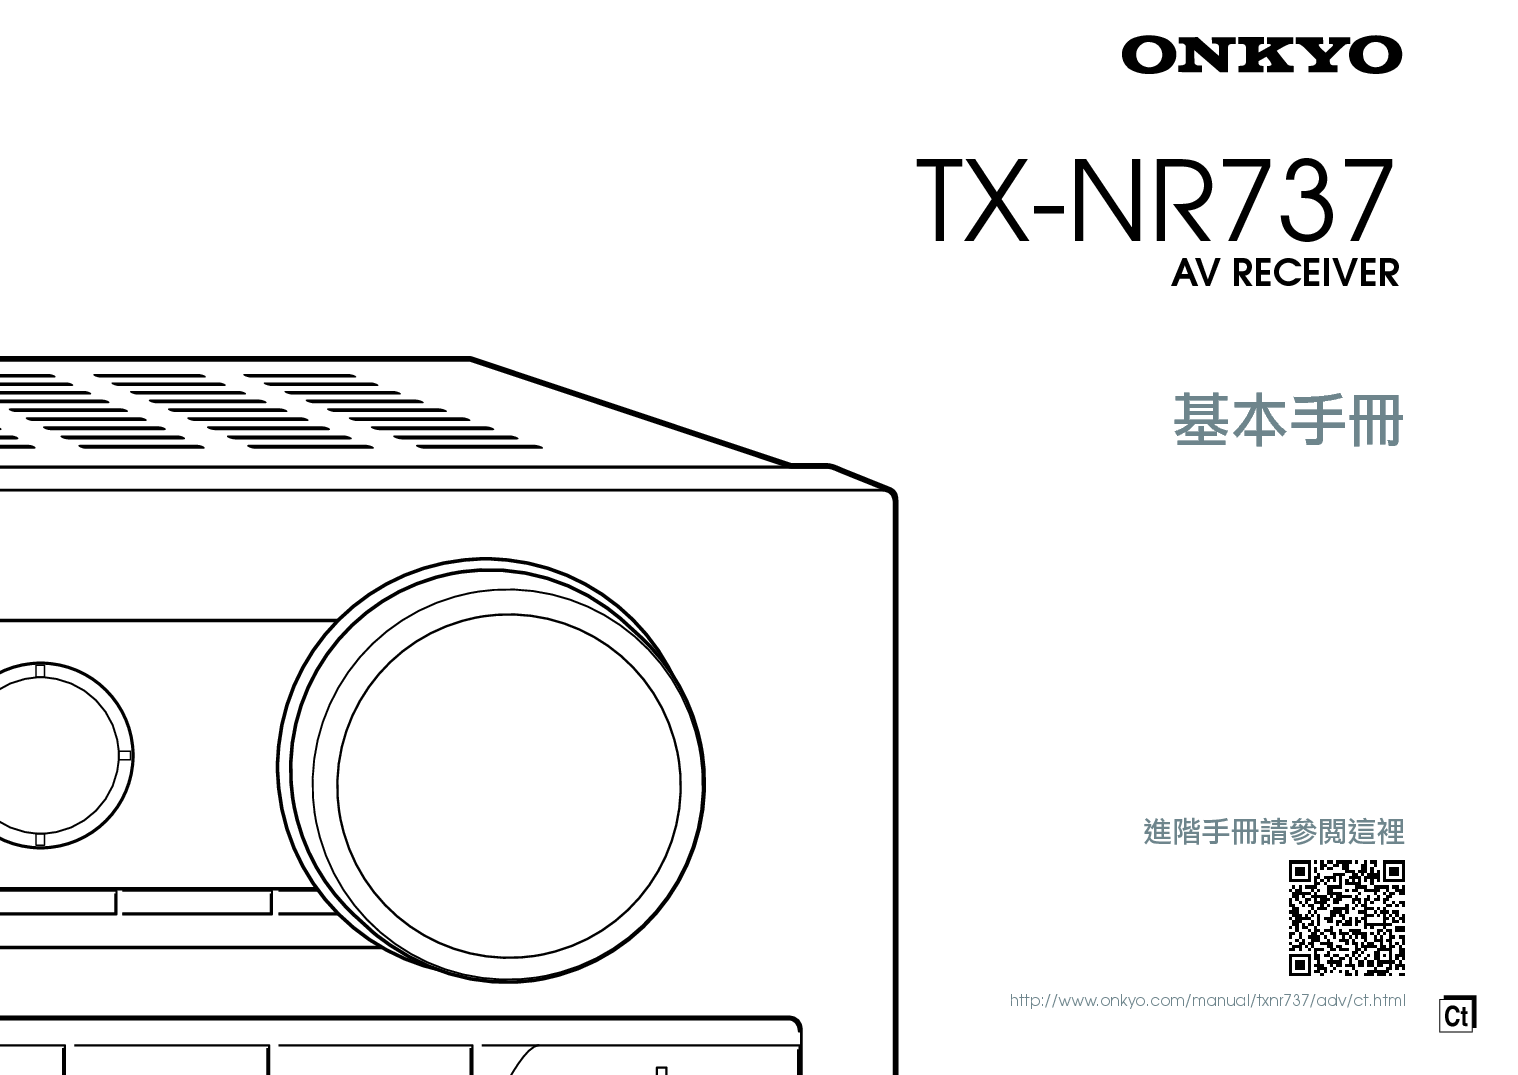 安桥 Onkyo TX-NR737 繁体 基础使用手册 封面